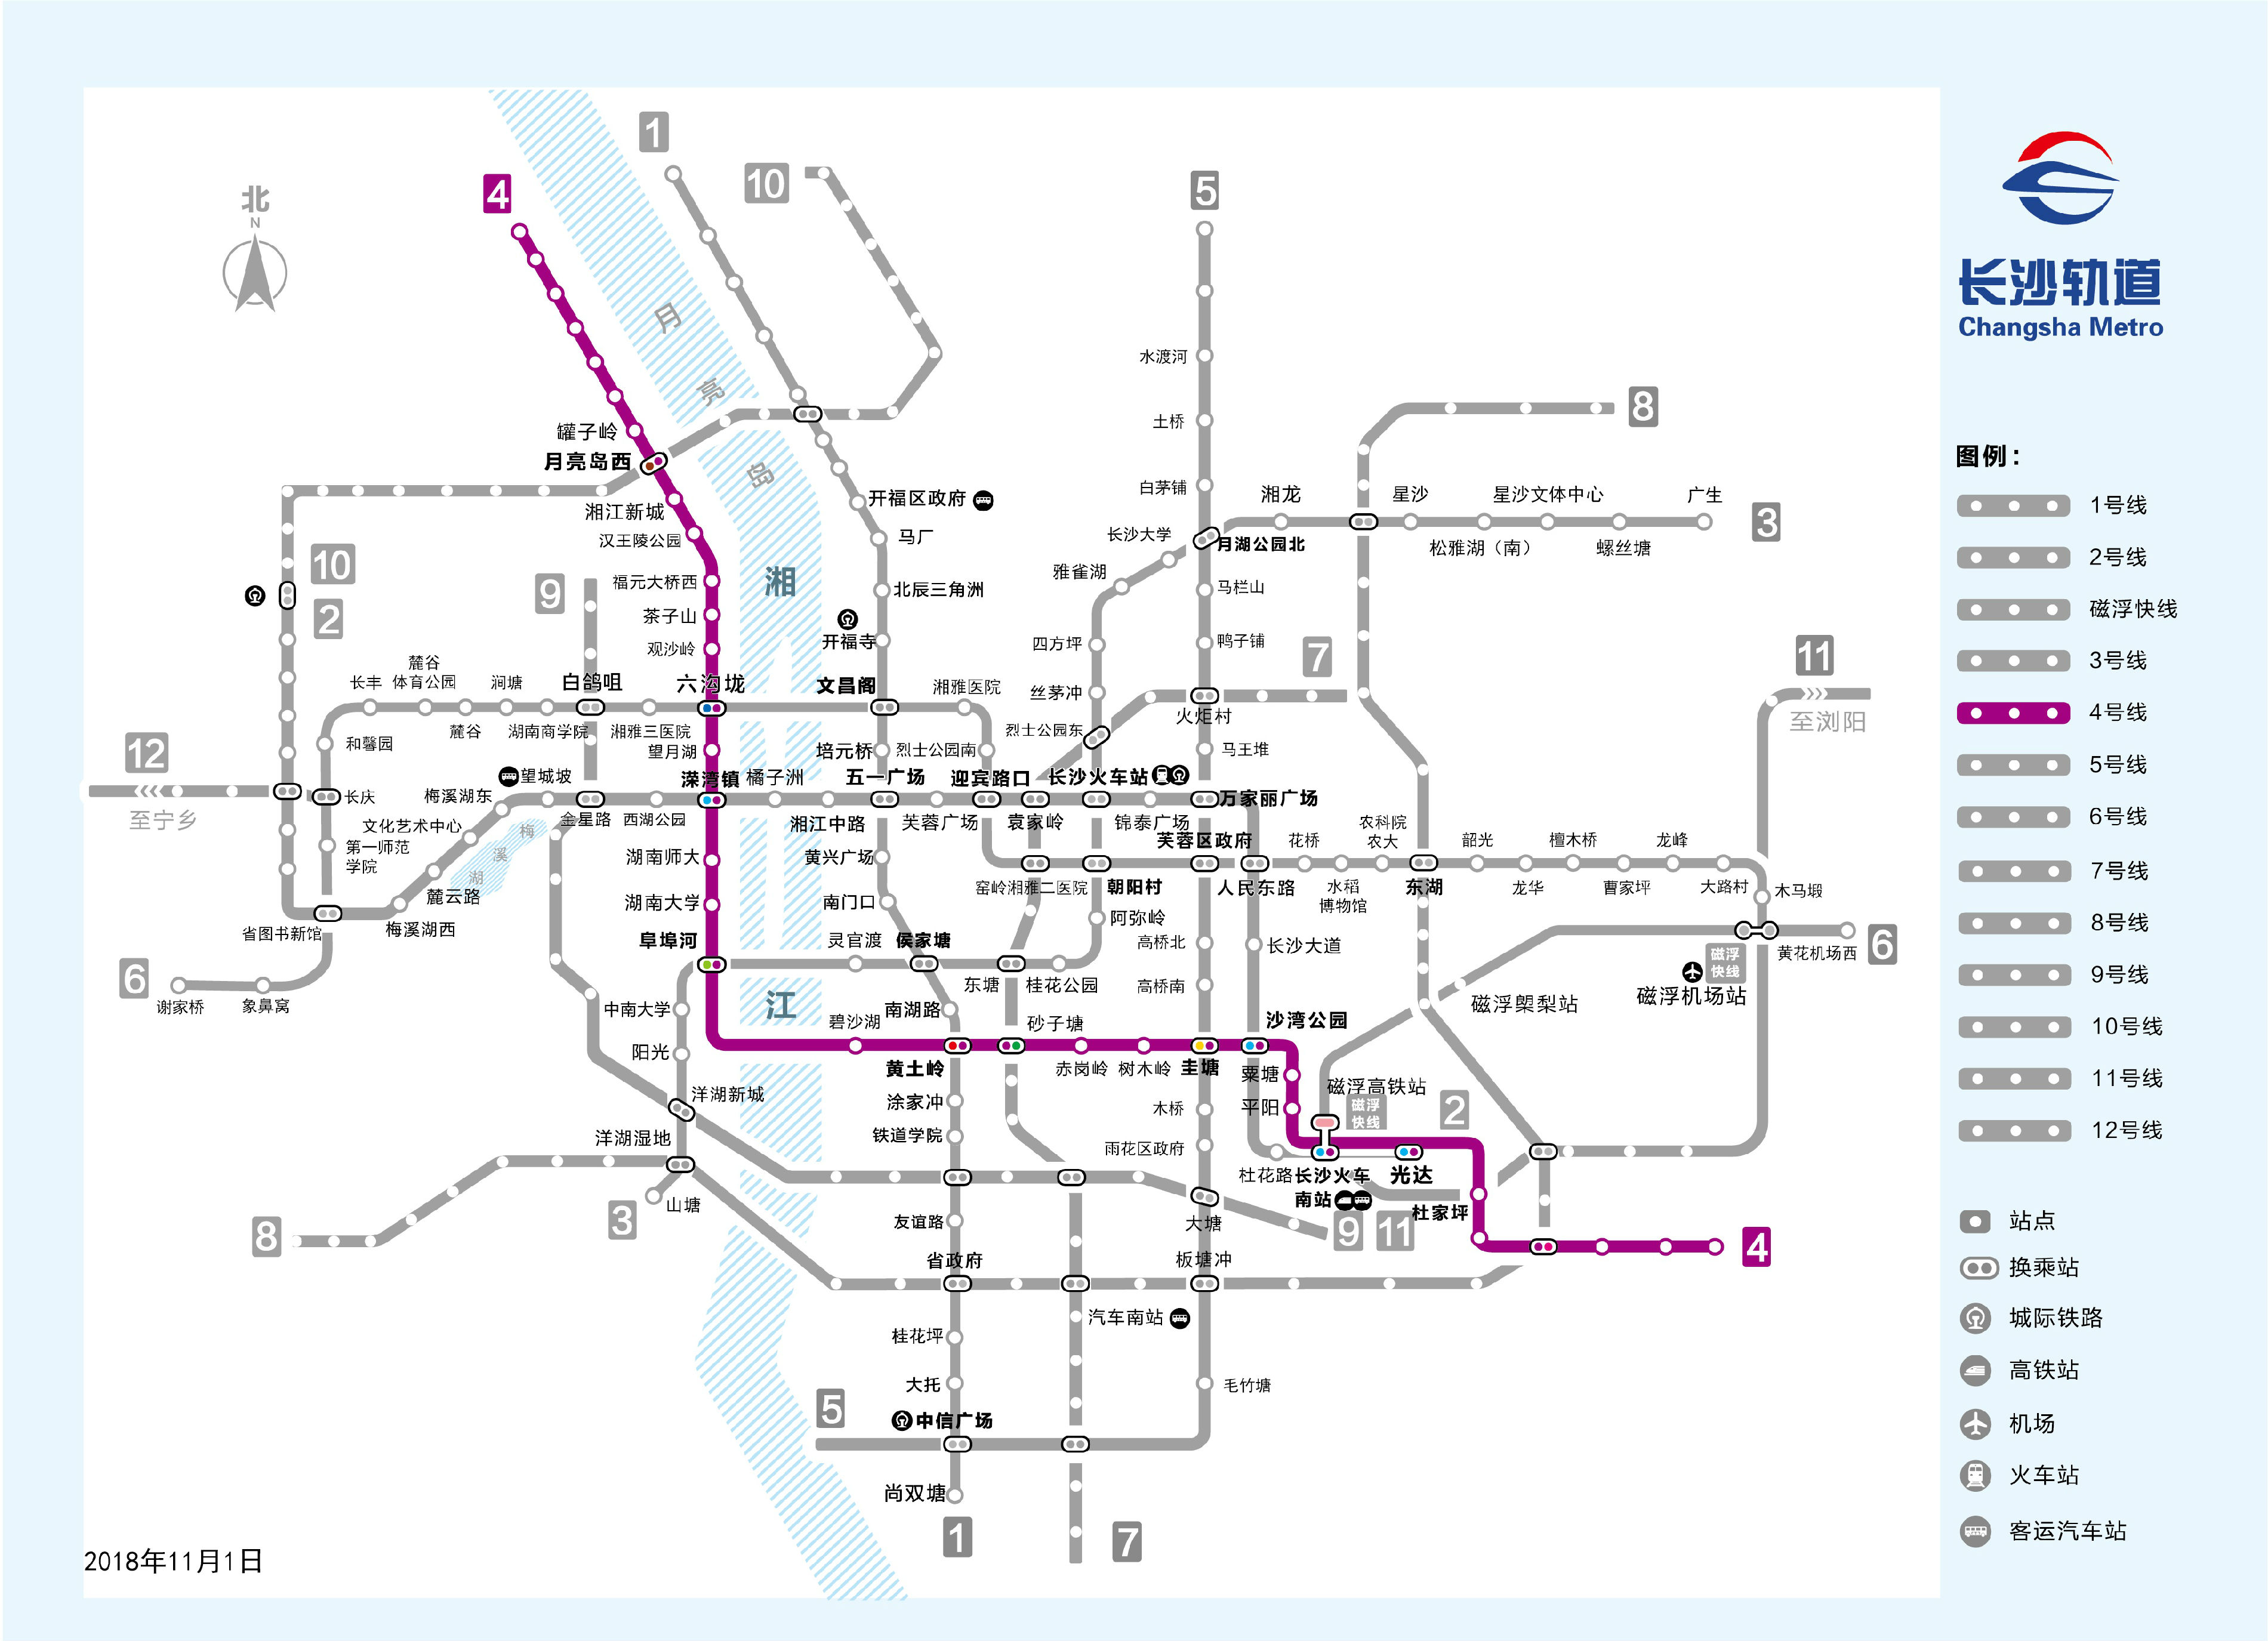 包括长沙地铁运营时间,地铁高清规划图,每条线路最新进展等